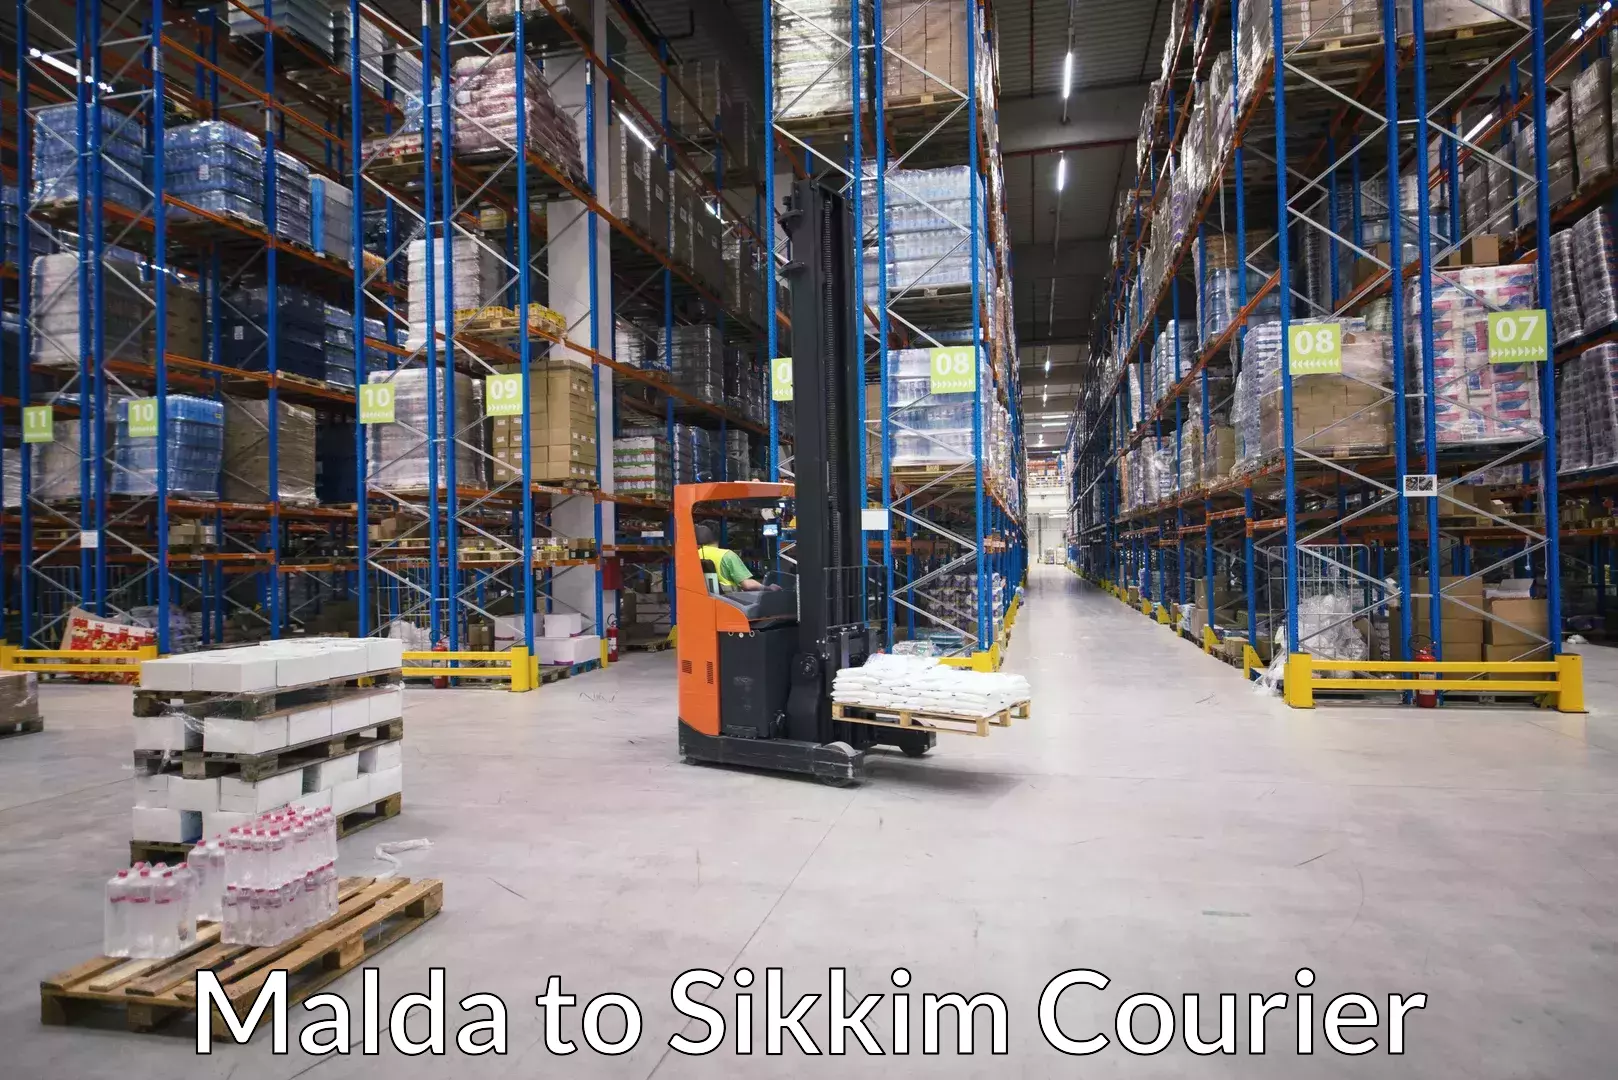 Regional luggage transport Malda to Pelling